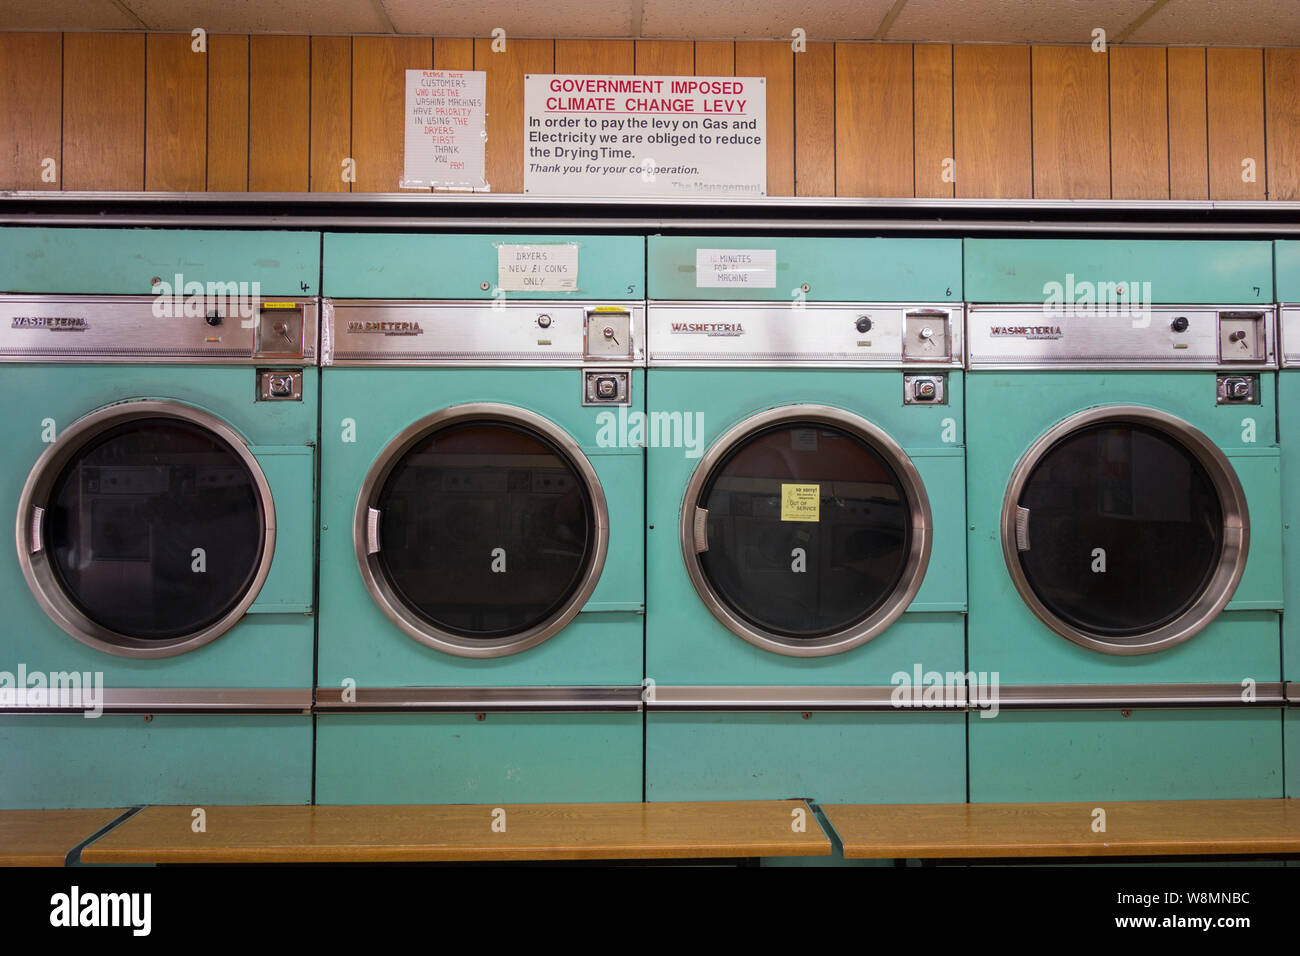 Machines à laver - laverie automatique - Londres - Angleterre Photo Stock -  Alamy